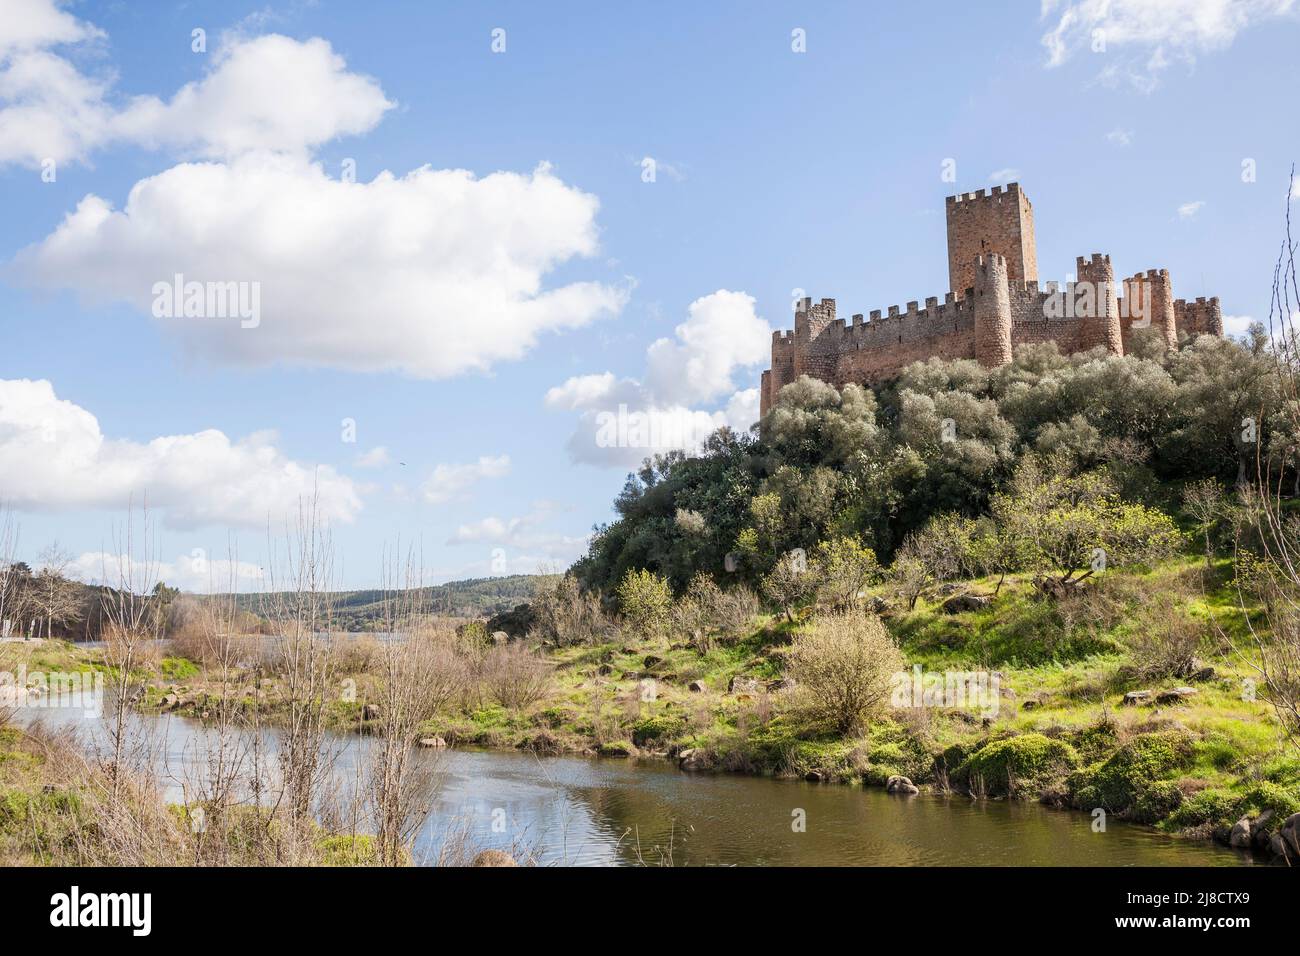 Vue depuis les rives du fleuve Tajo vers le château d'Almourol, situé au milieu d'une île. Centre du Portugal Banque D'Images